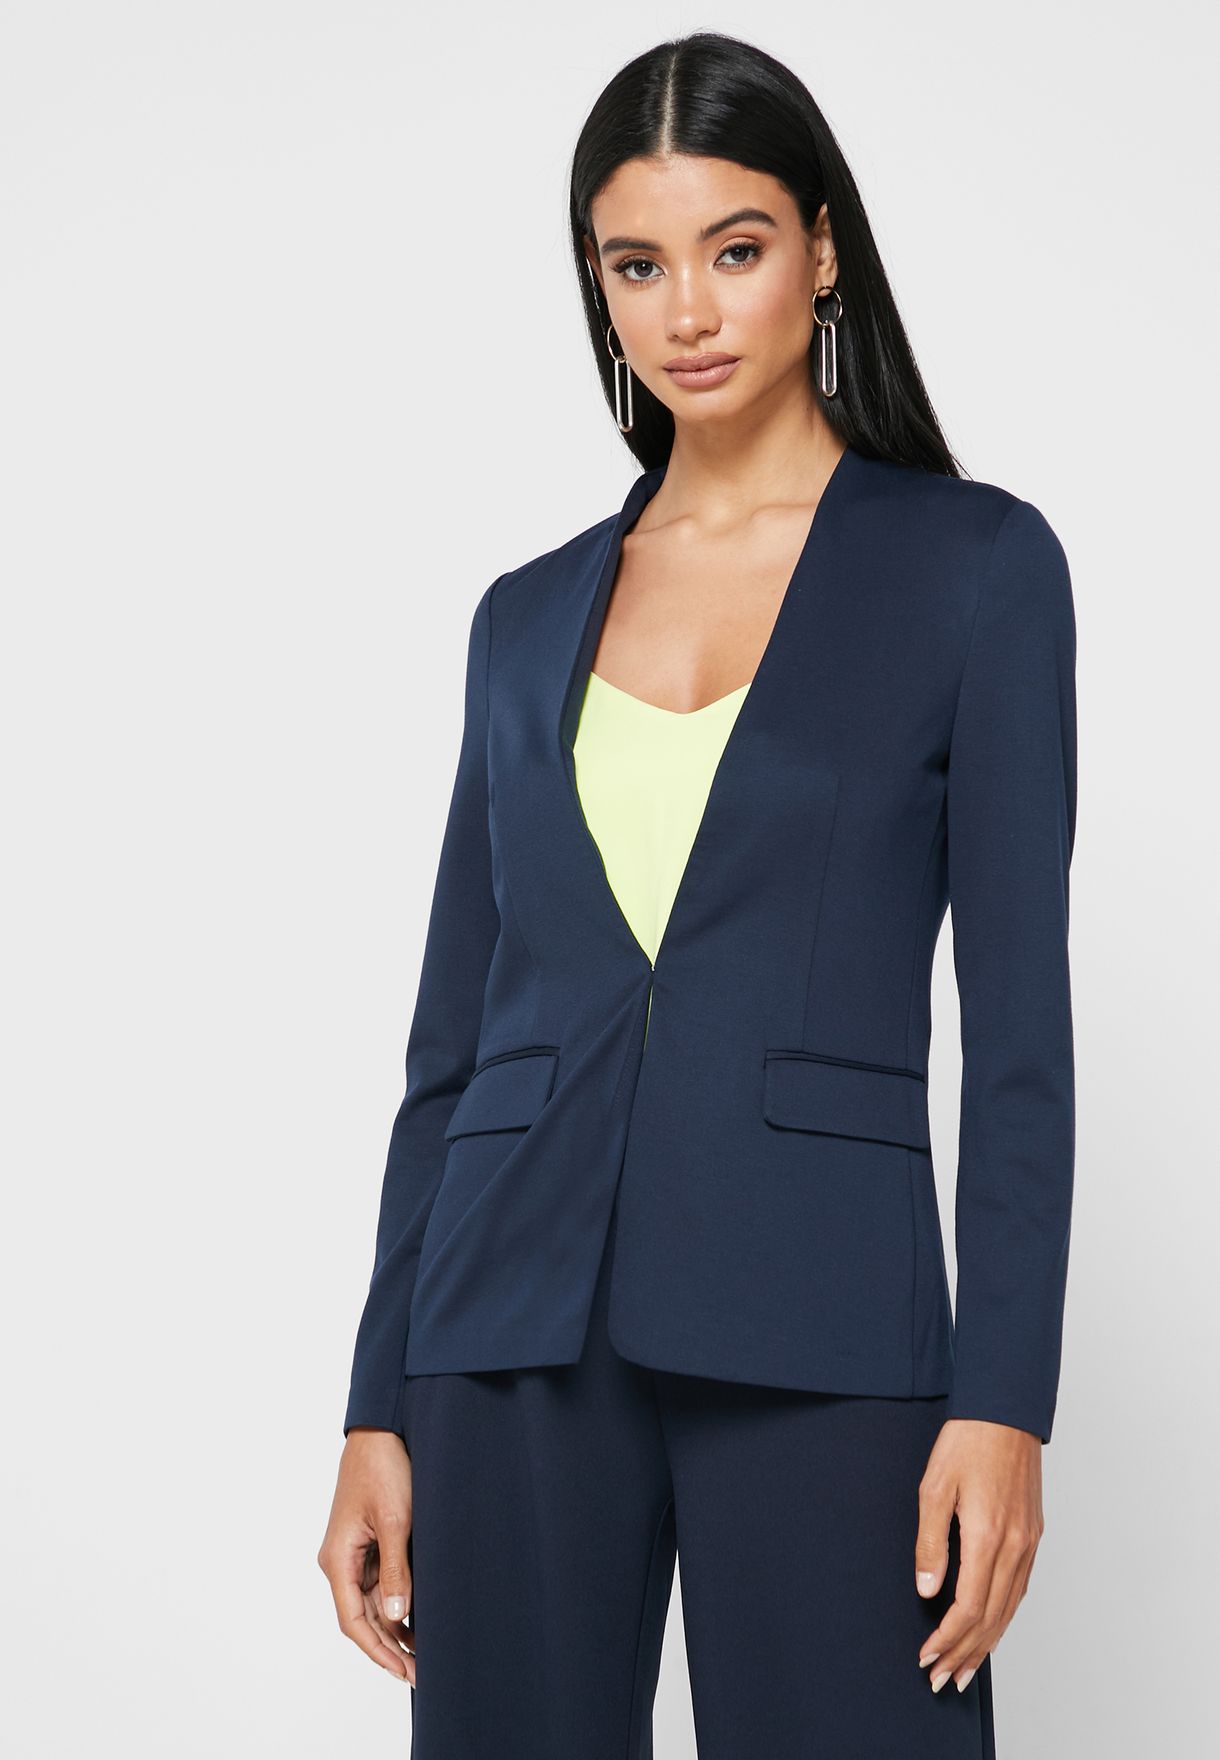 revidere let overlap Buy Vero Moda navy Tailored Blazer for Women in MENA, Worldwide